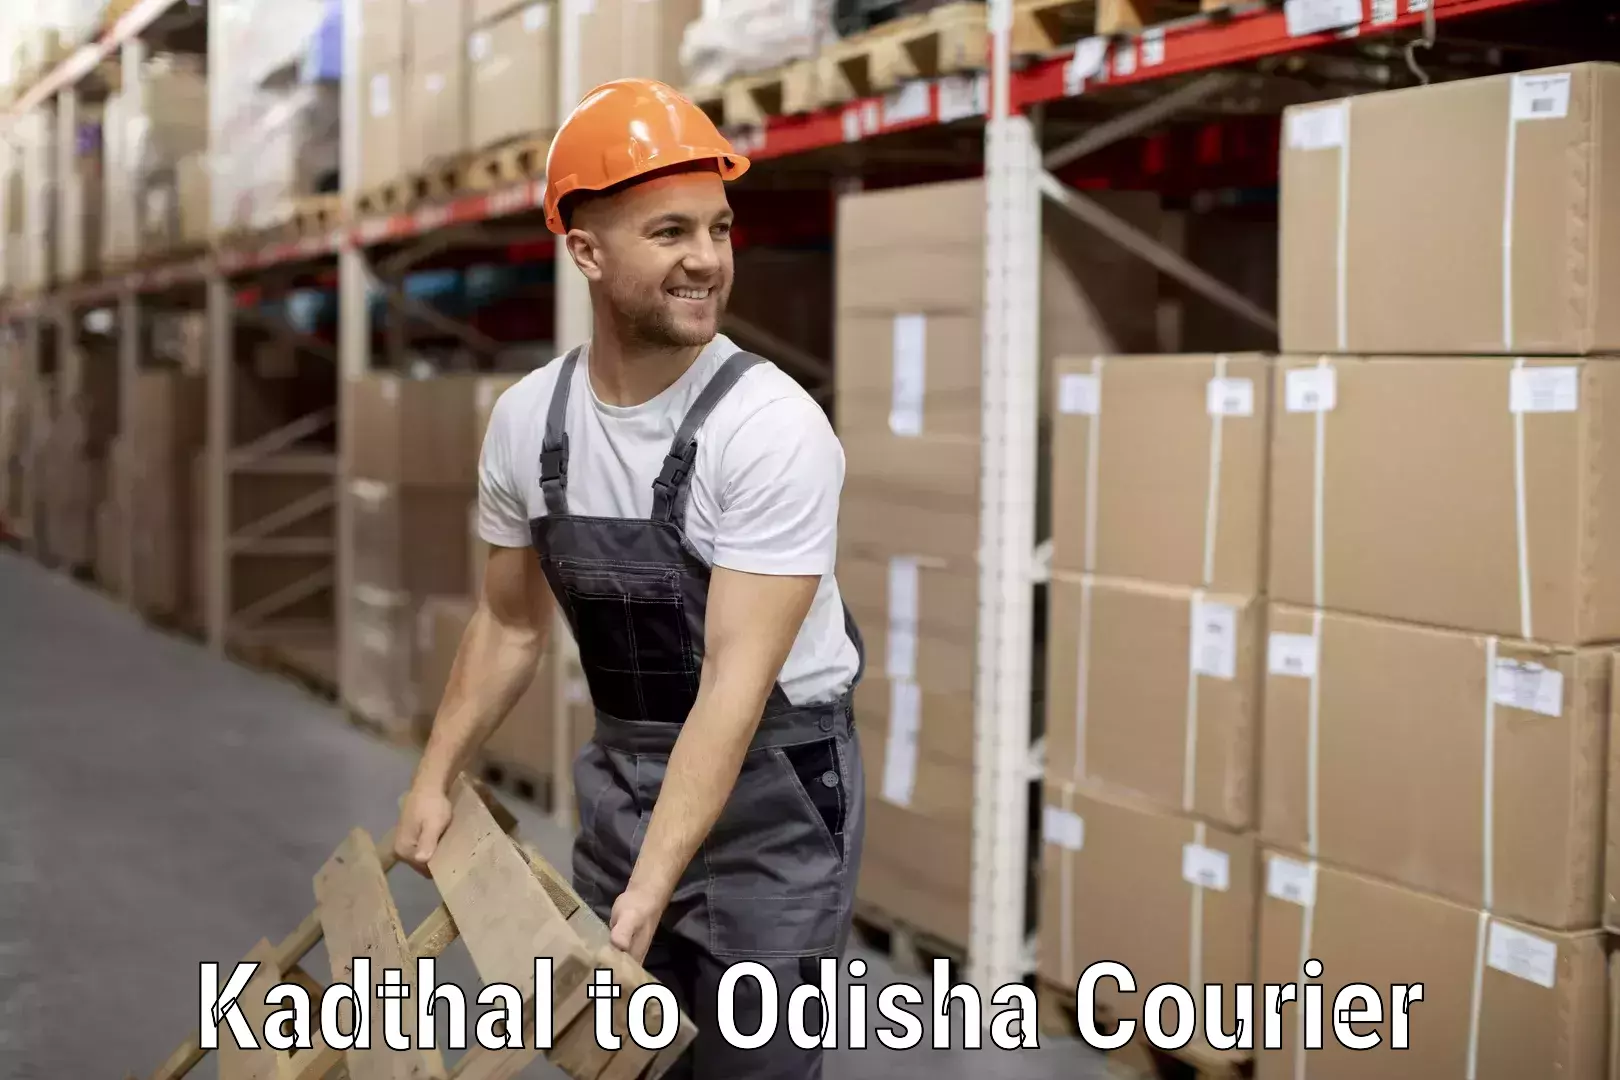 Digital baggage courier Kadthal to Odisha